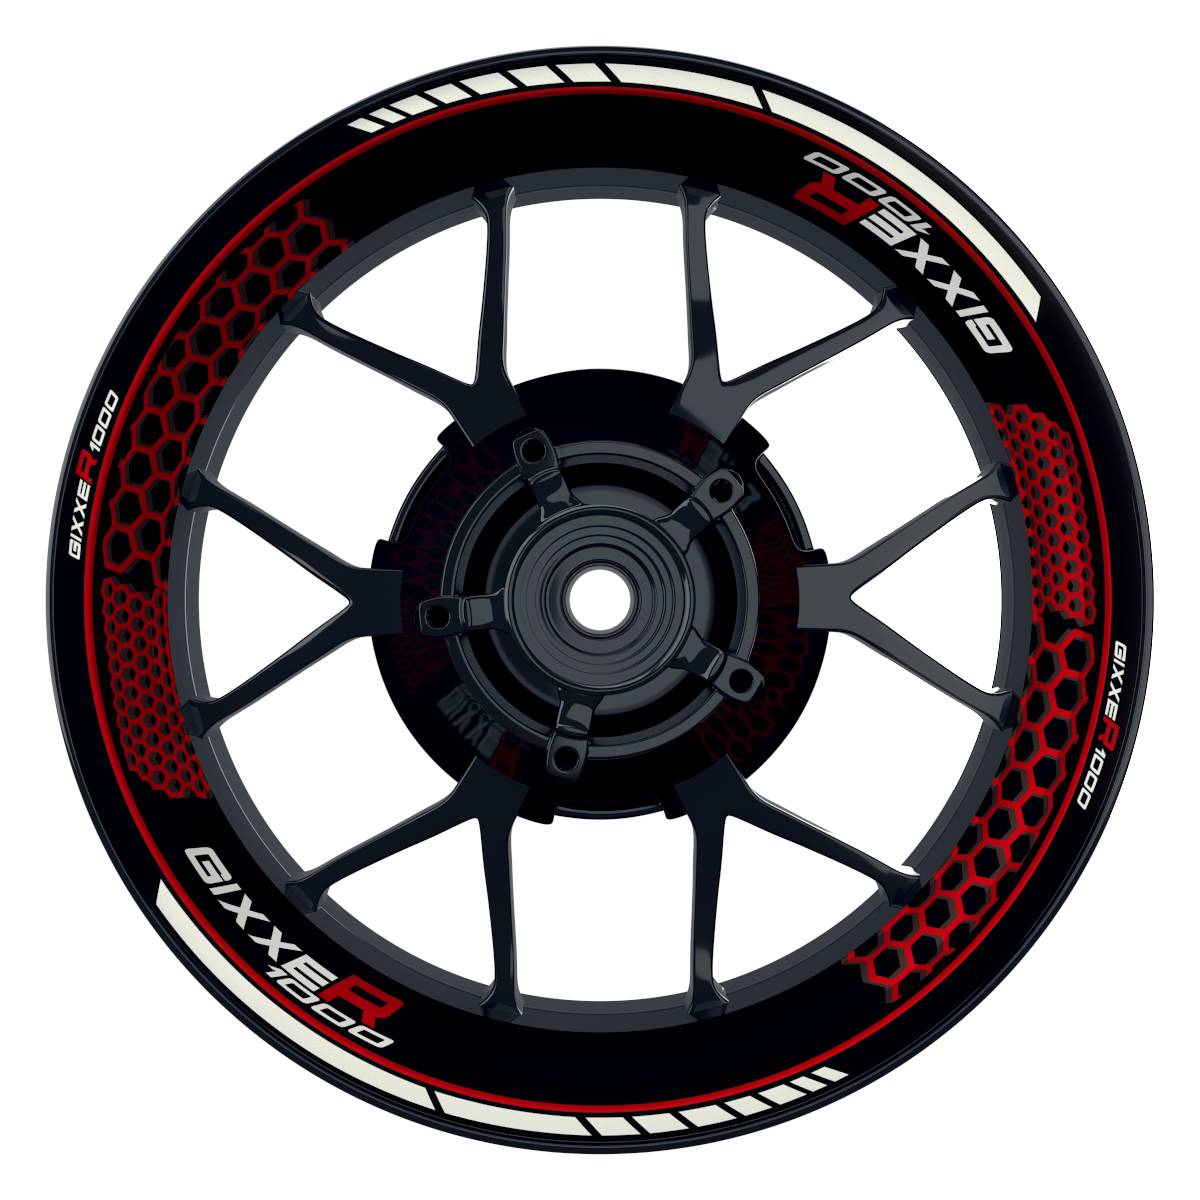 GIXXER1000 Hexagon schwarz rot Wheelsticker Felgenaufkleber